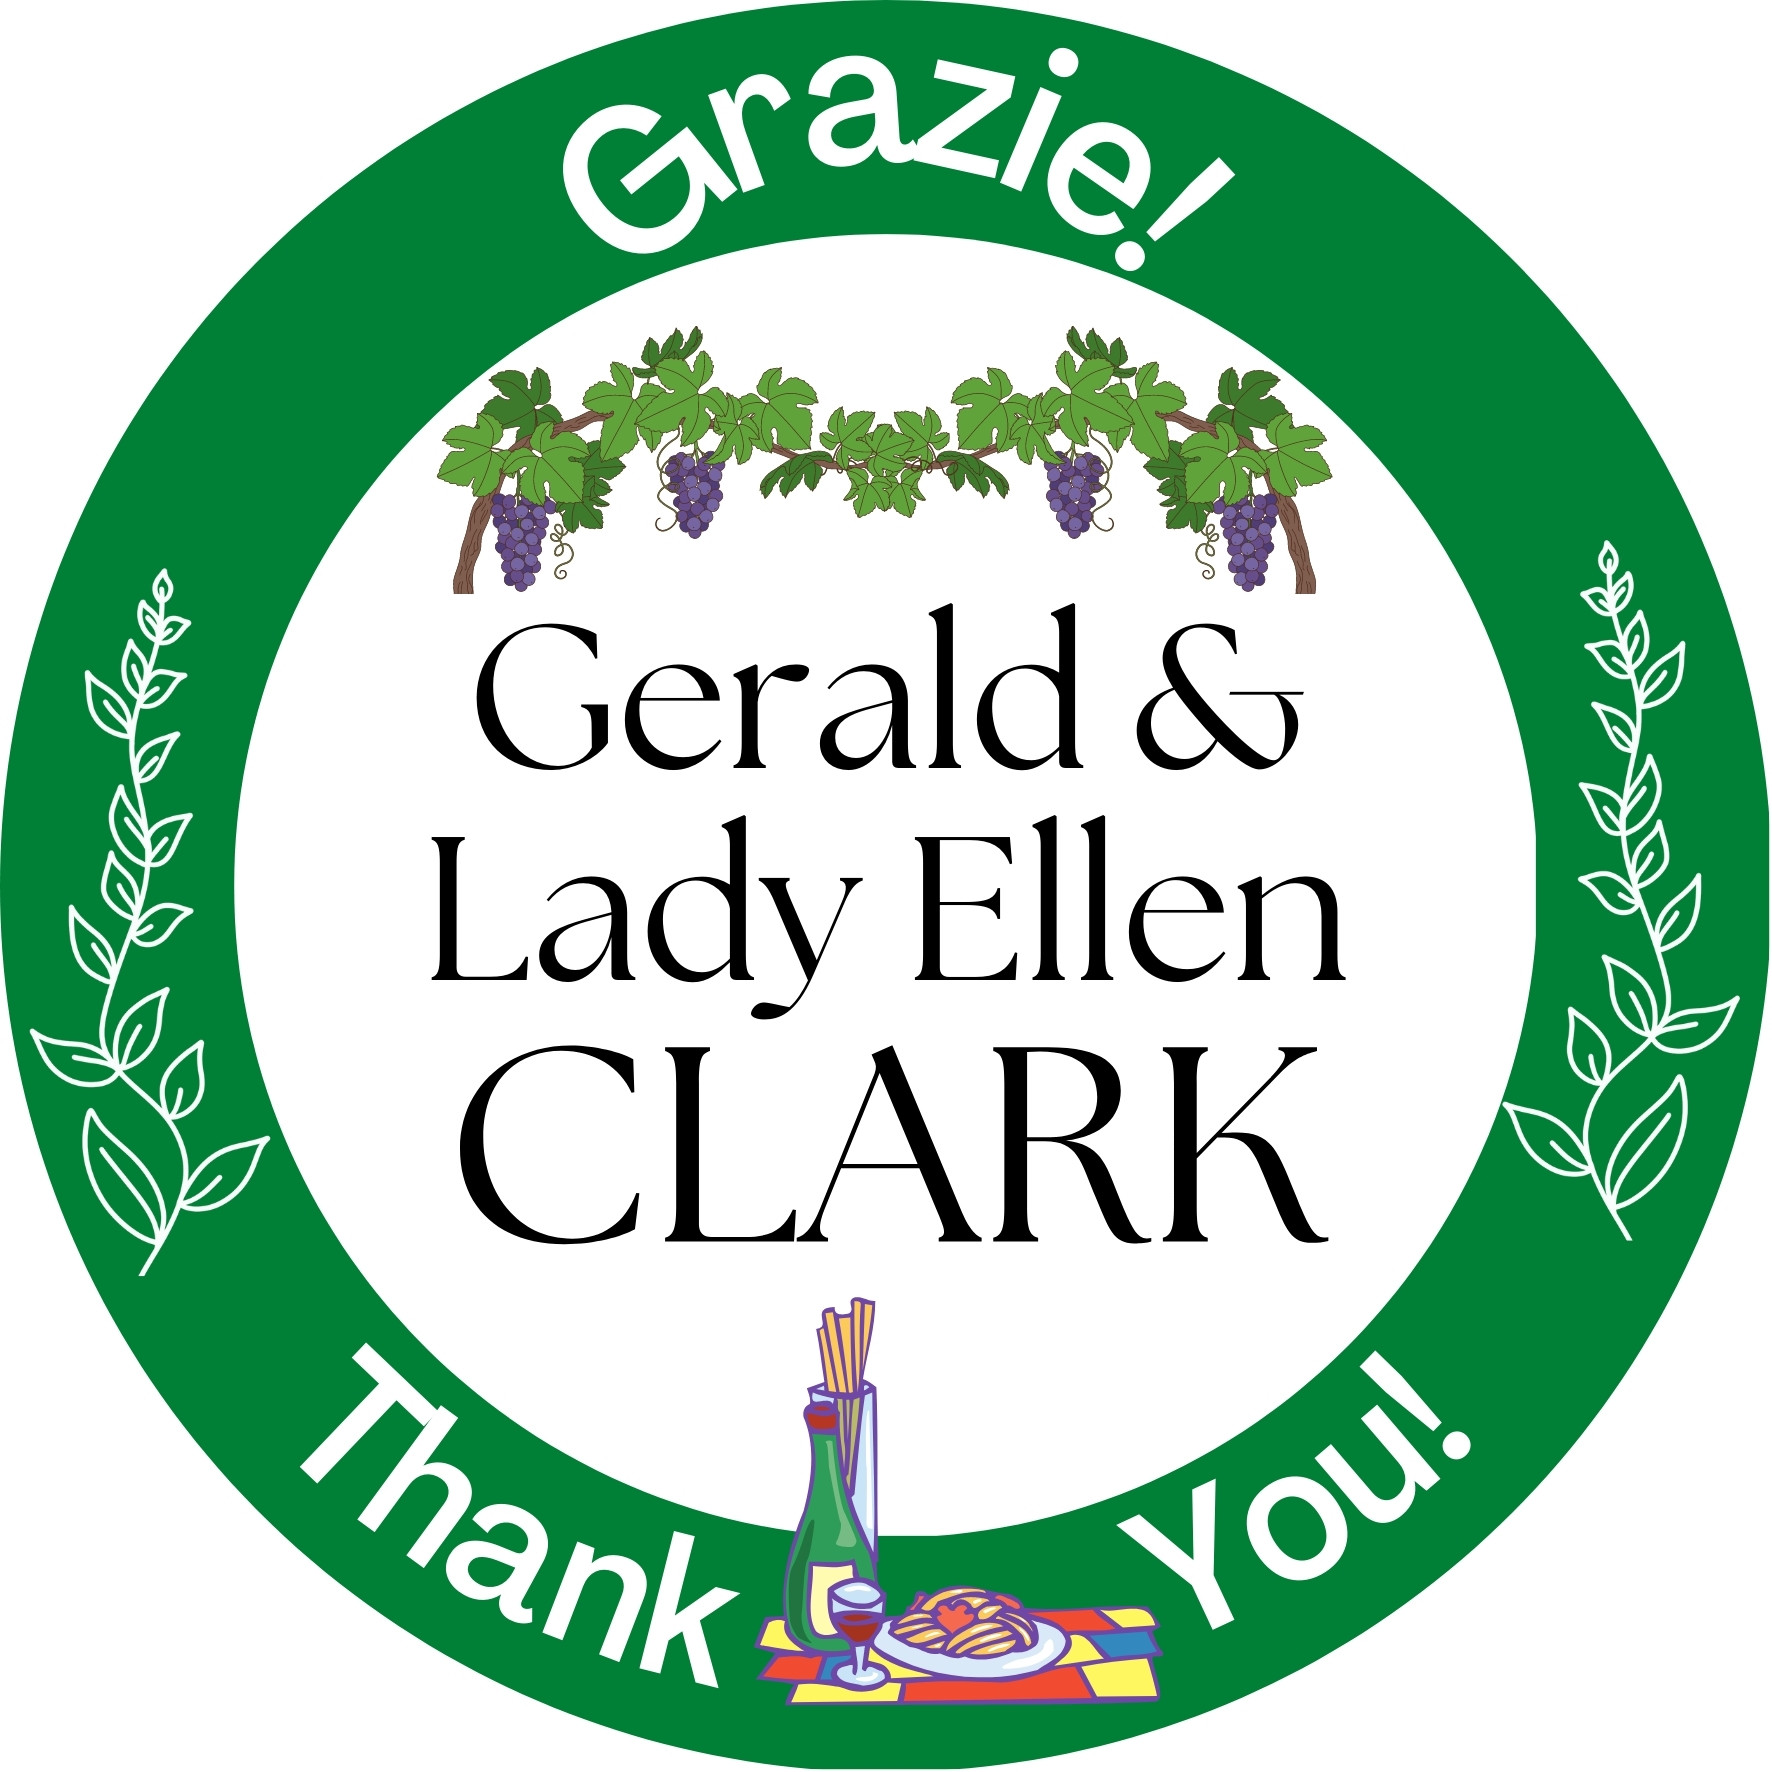 Gerald & Lady Ellen Clark Napoli Sponsor